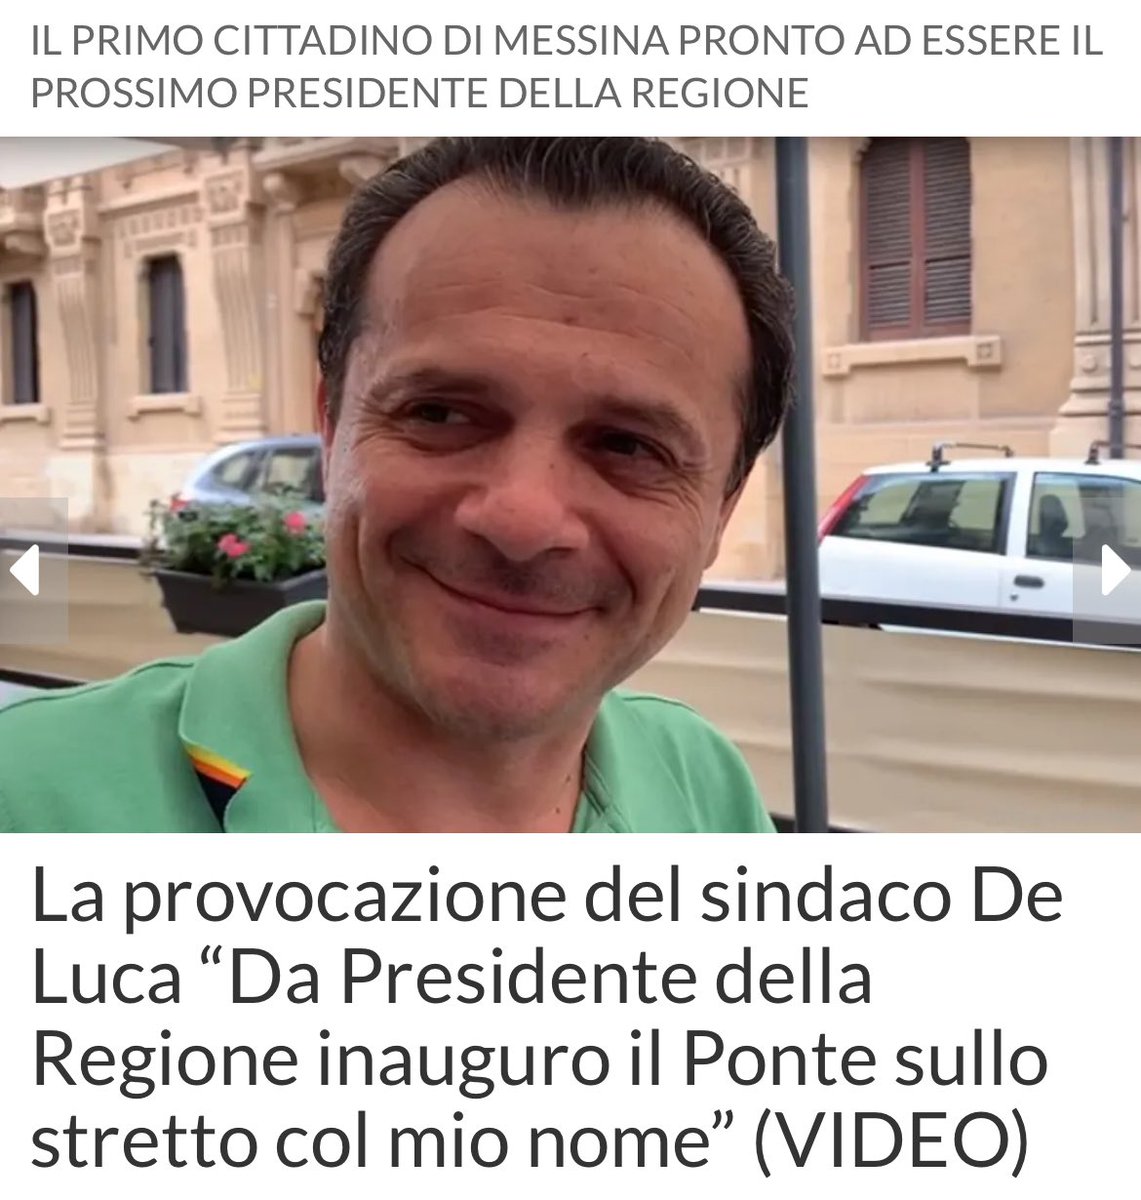 Gli alleati del @pdnetwork in Sicilia.
@pdsiciliatw @AntoFerrantePD 🤡

#23febbraio